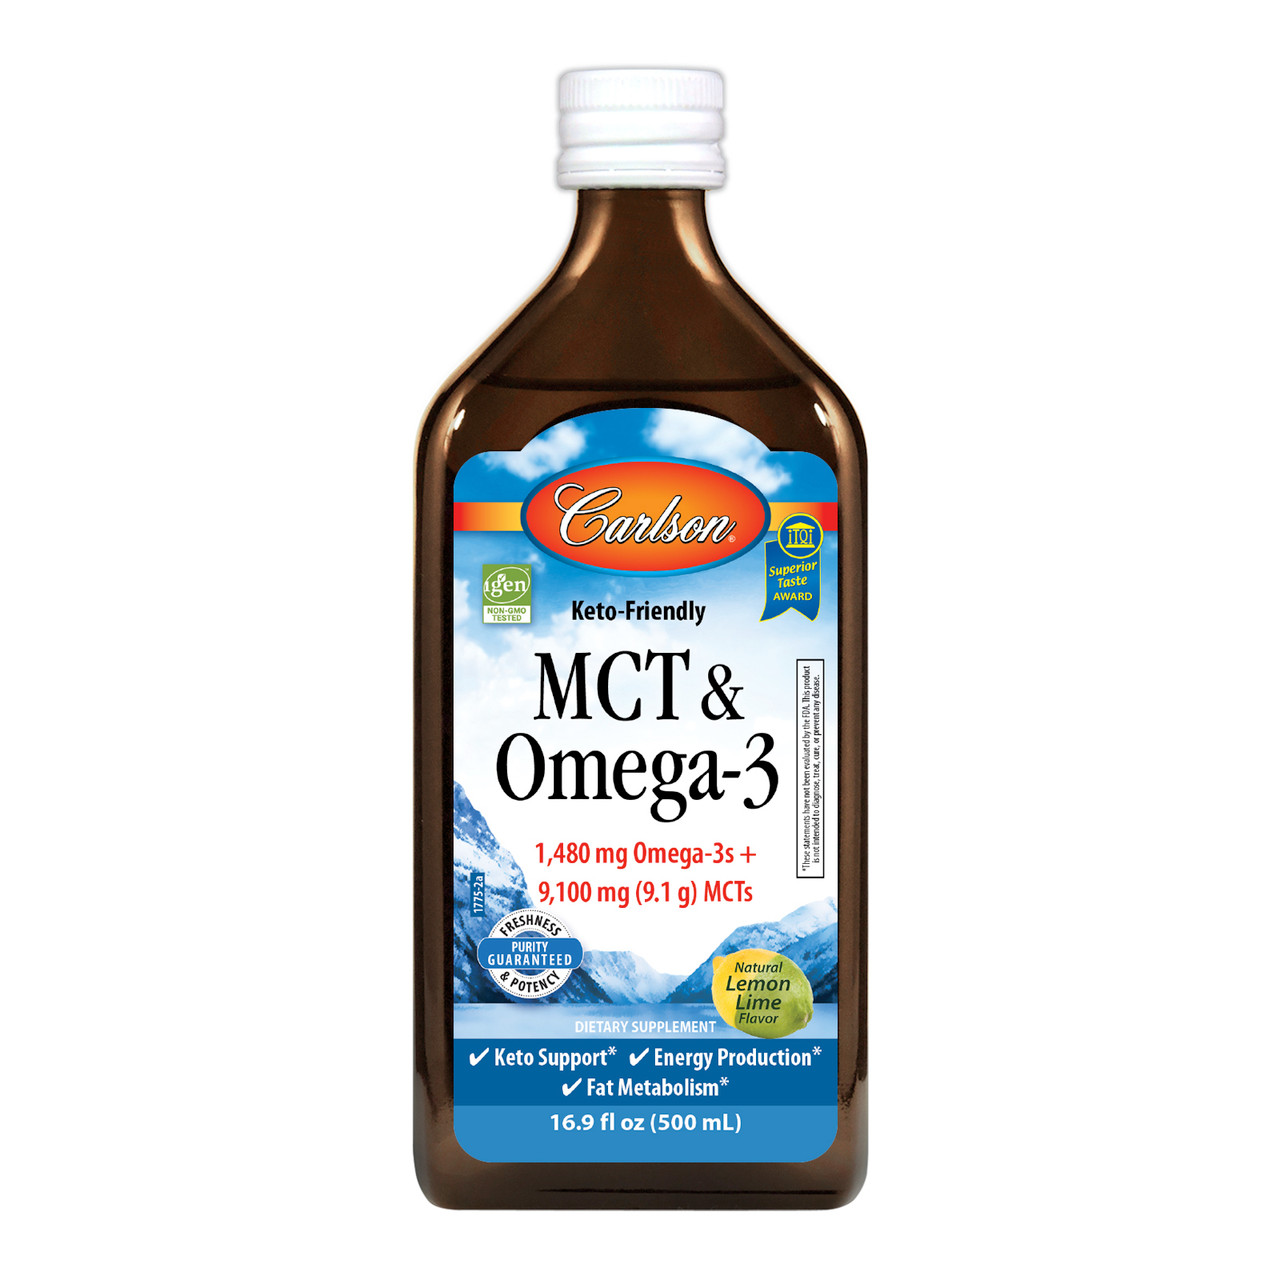 MCT & Omega-3  1,480 mg Omega-3s + 9,200 mg (9.2 g) MCTs